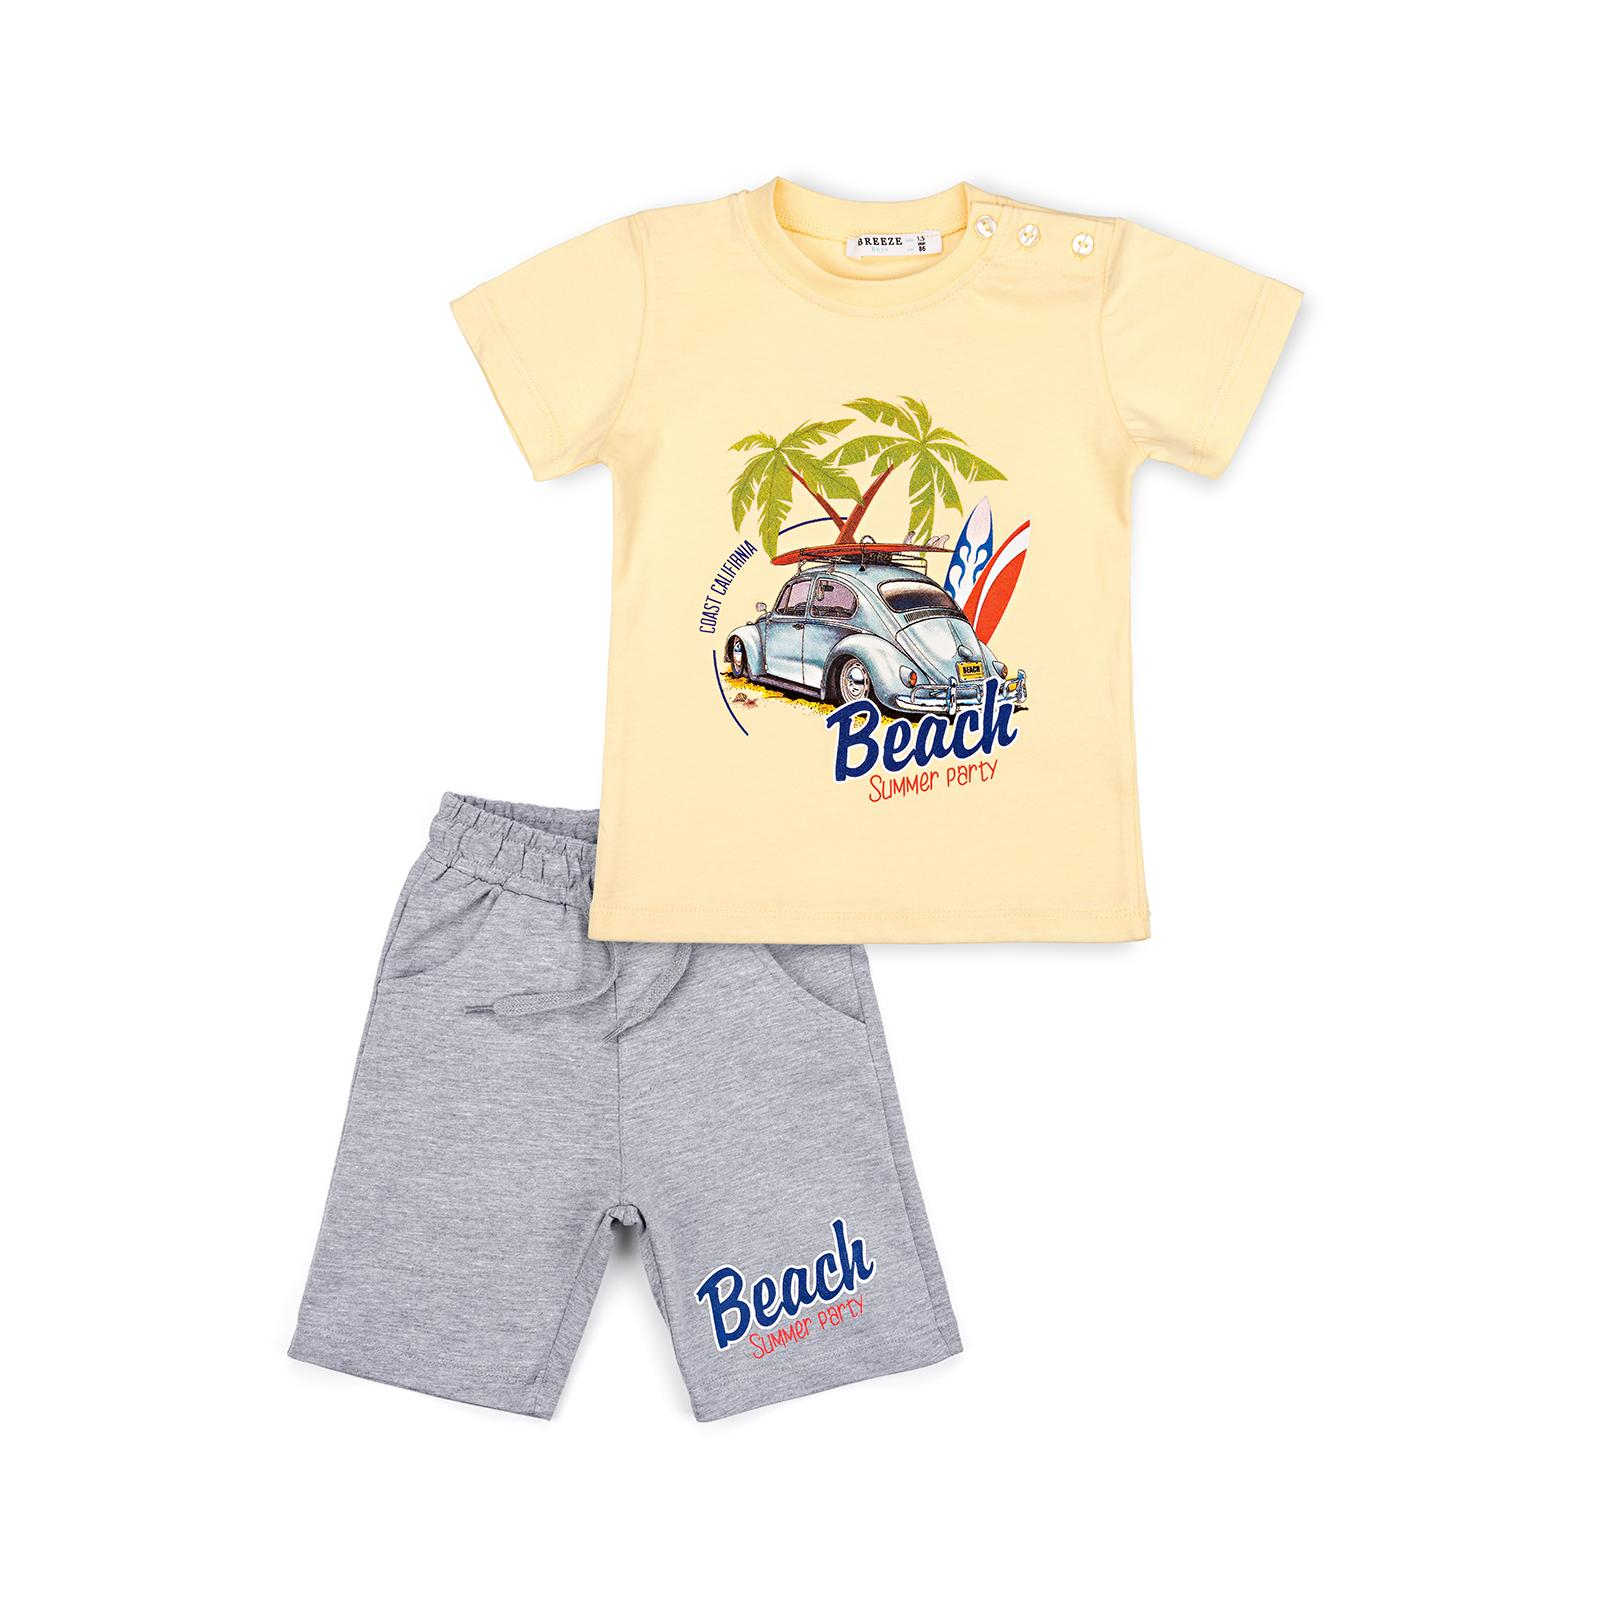 Набір дитячого одягу Breeze з машинкою (10940-86B-blue)